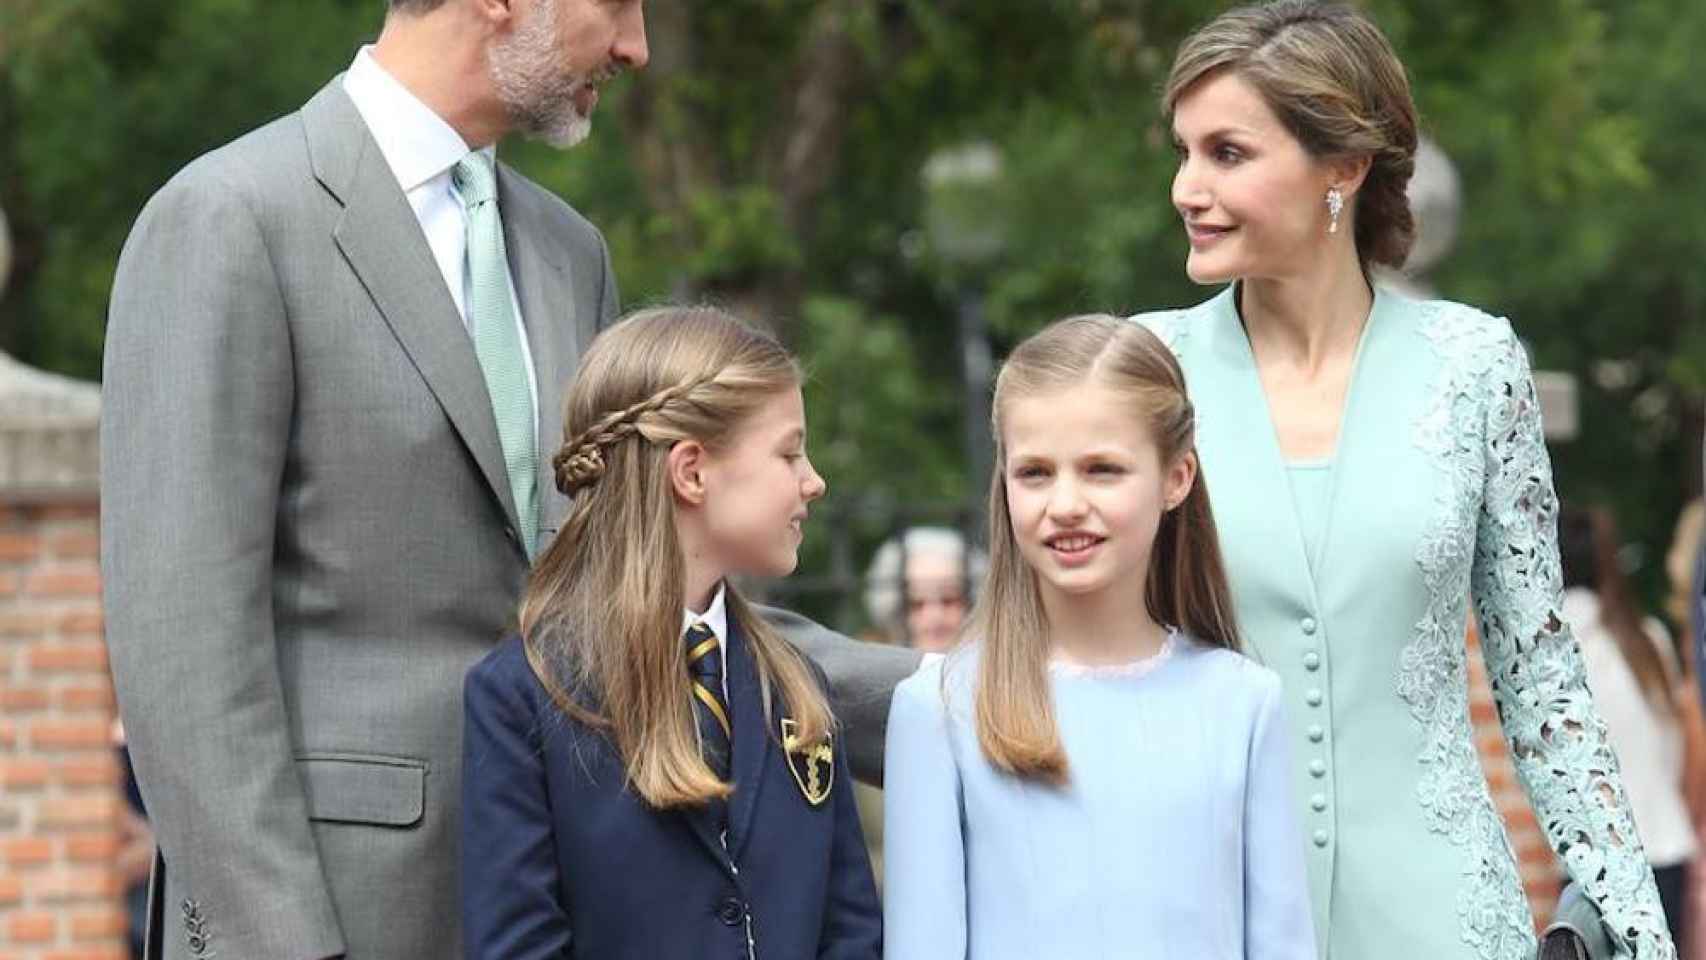 La infanta celebra su comunión y Letizia repite vestido